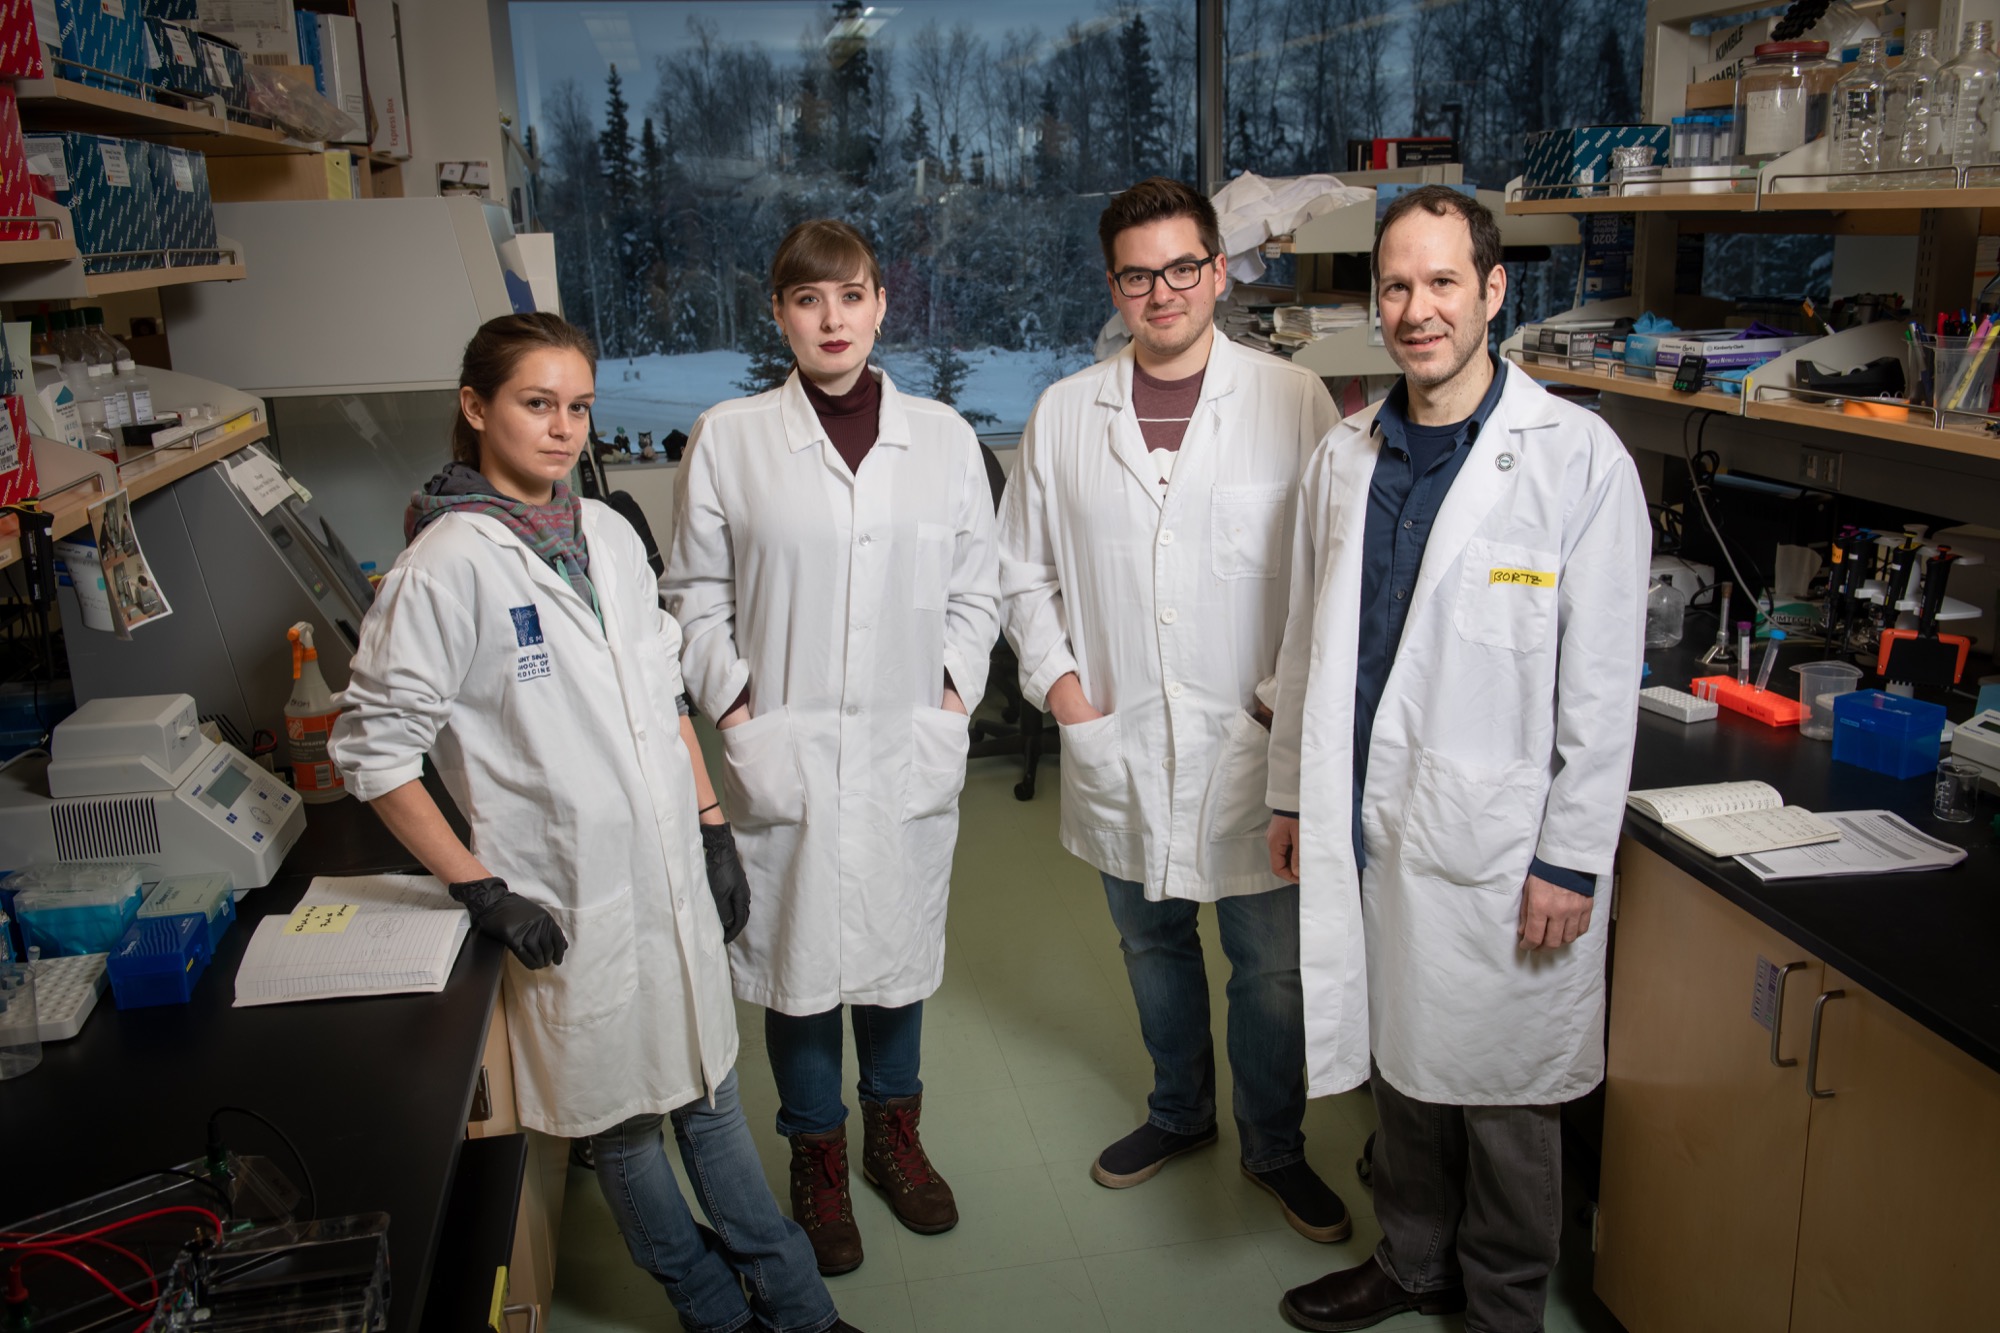 The four researchers comprising the Bortz lab